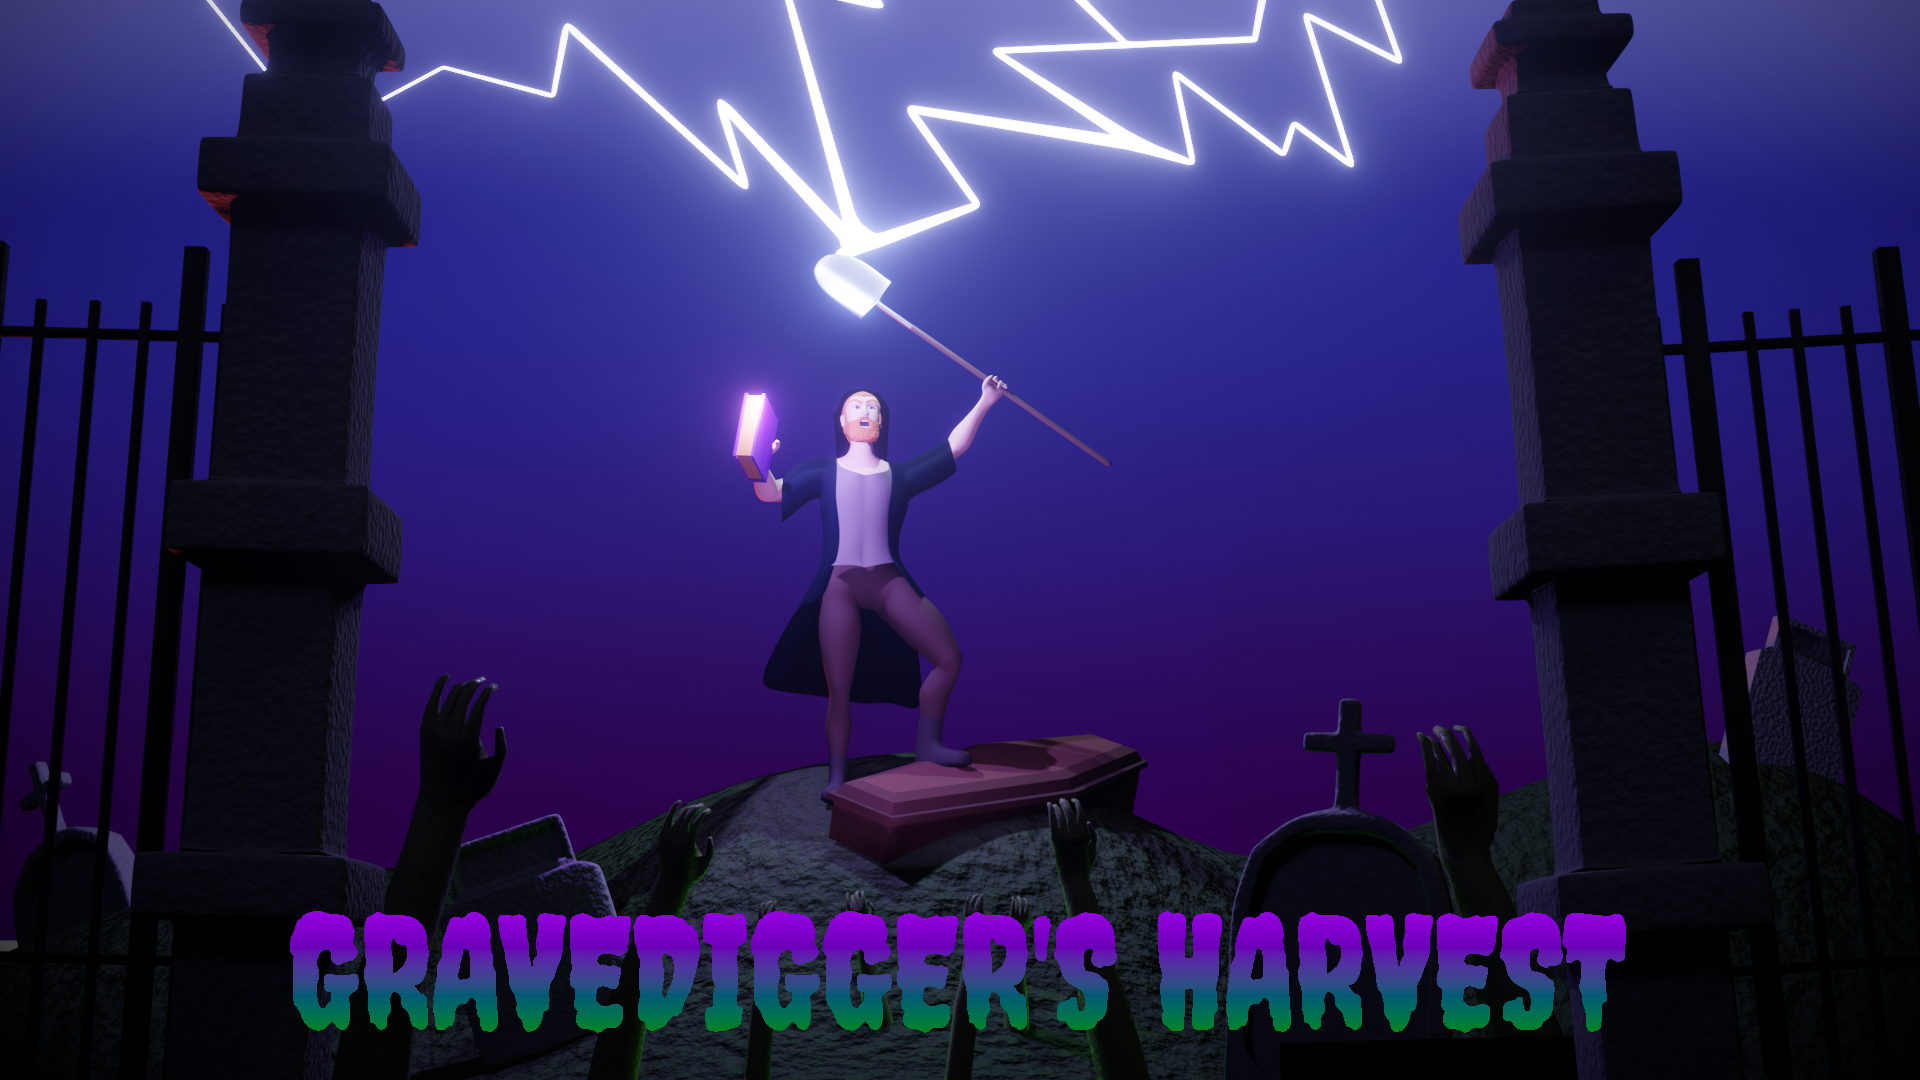 Gravedigger's Harvest